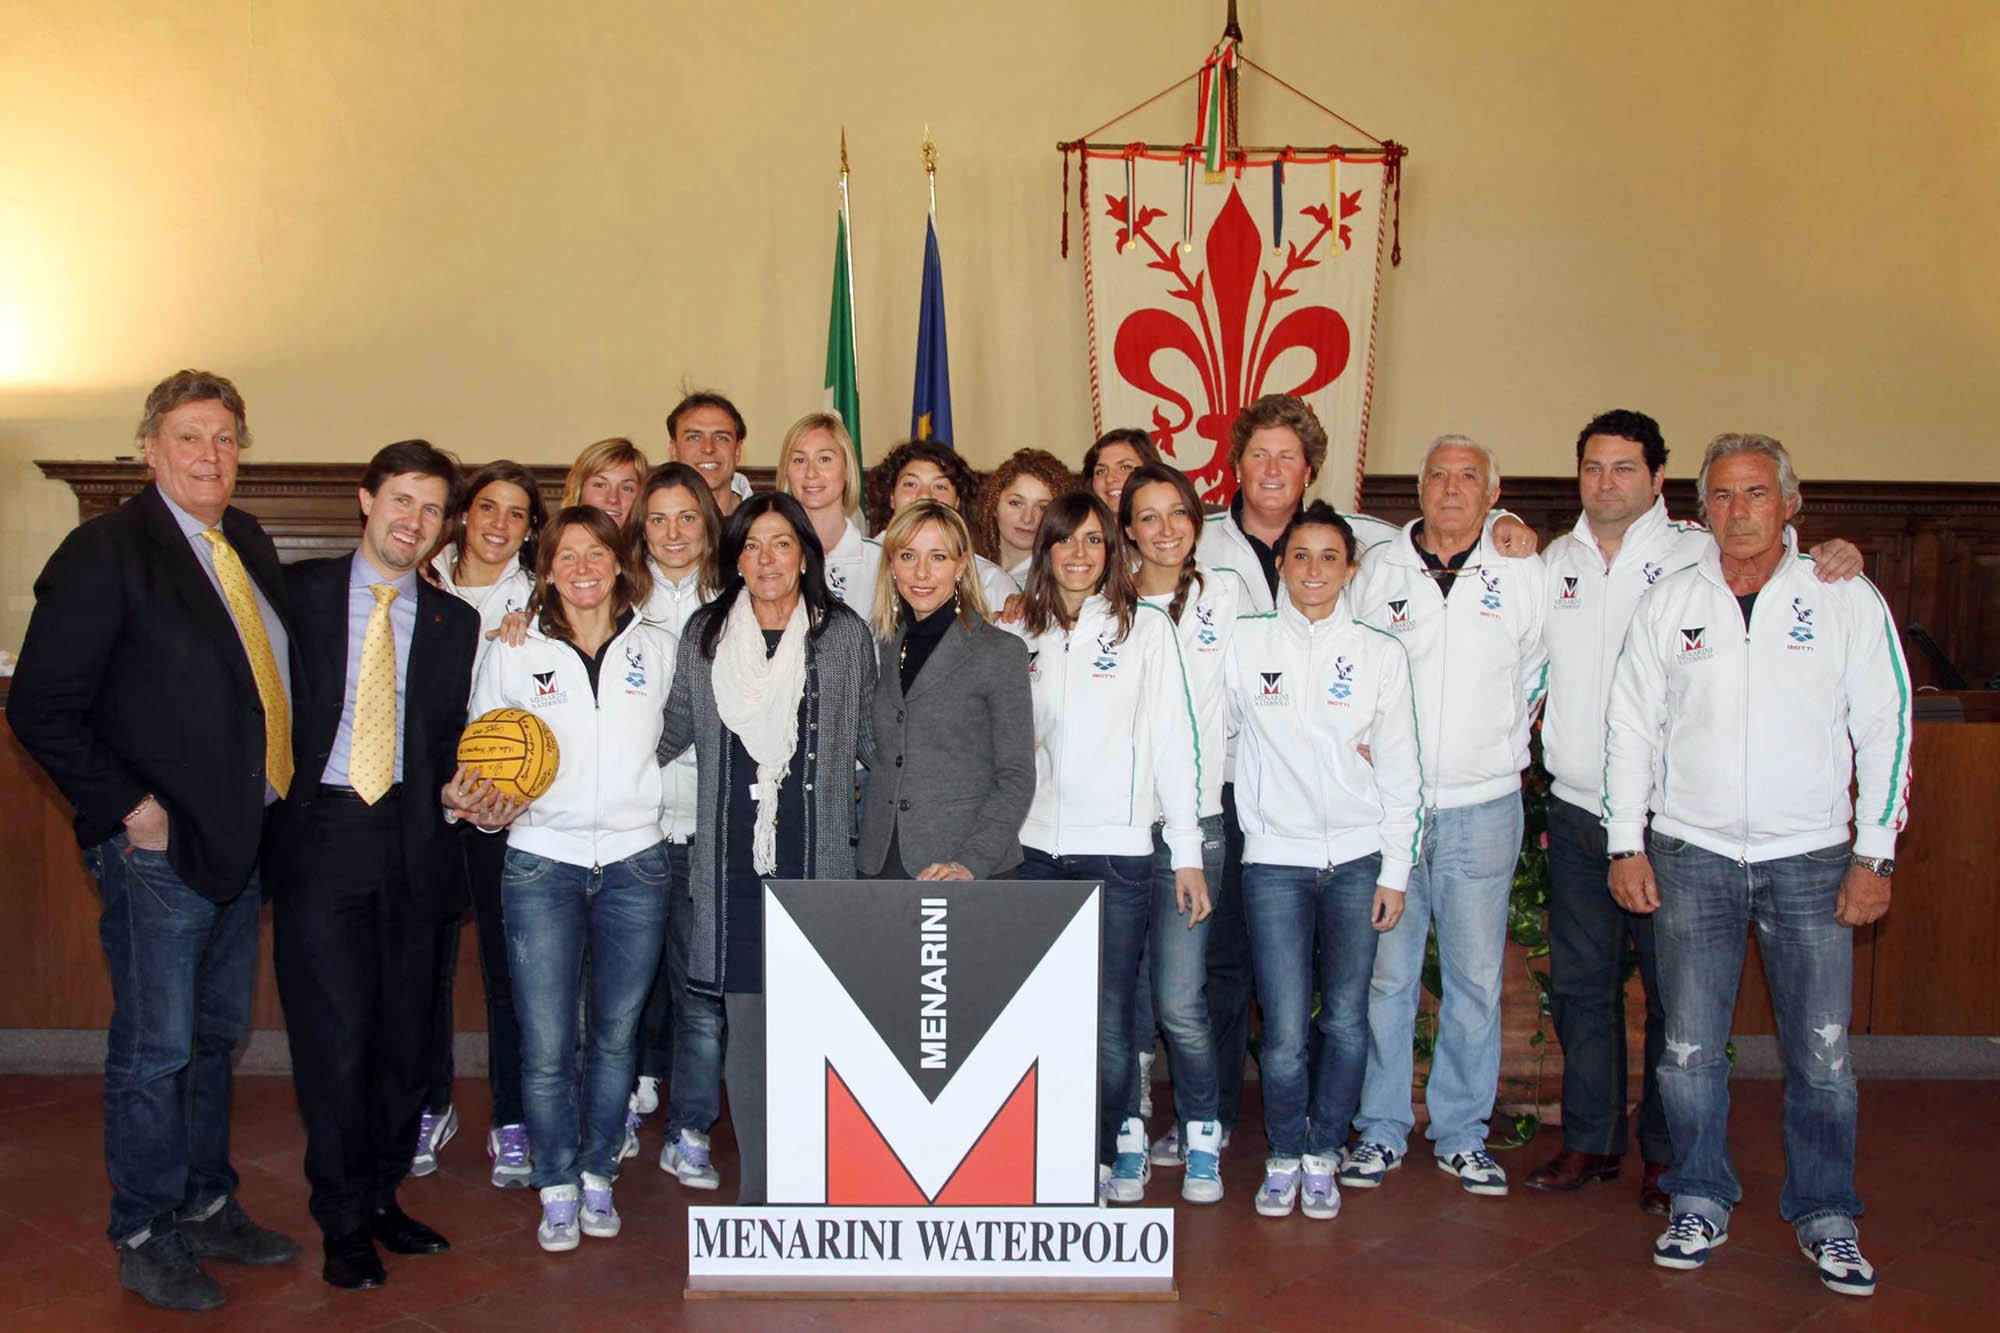 Menarini Fiorentina Waterpolo